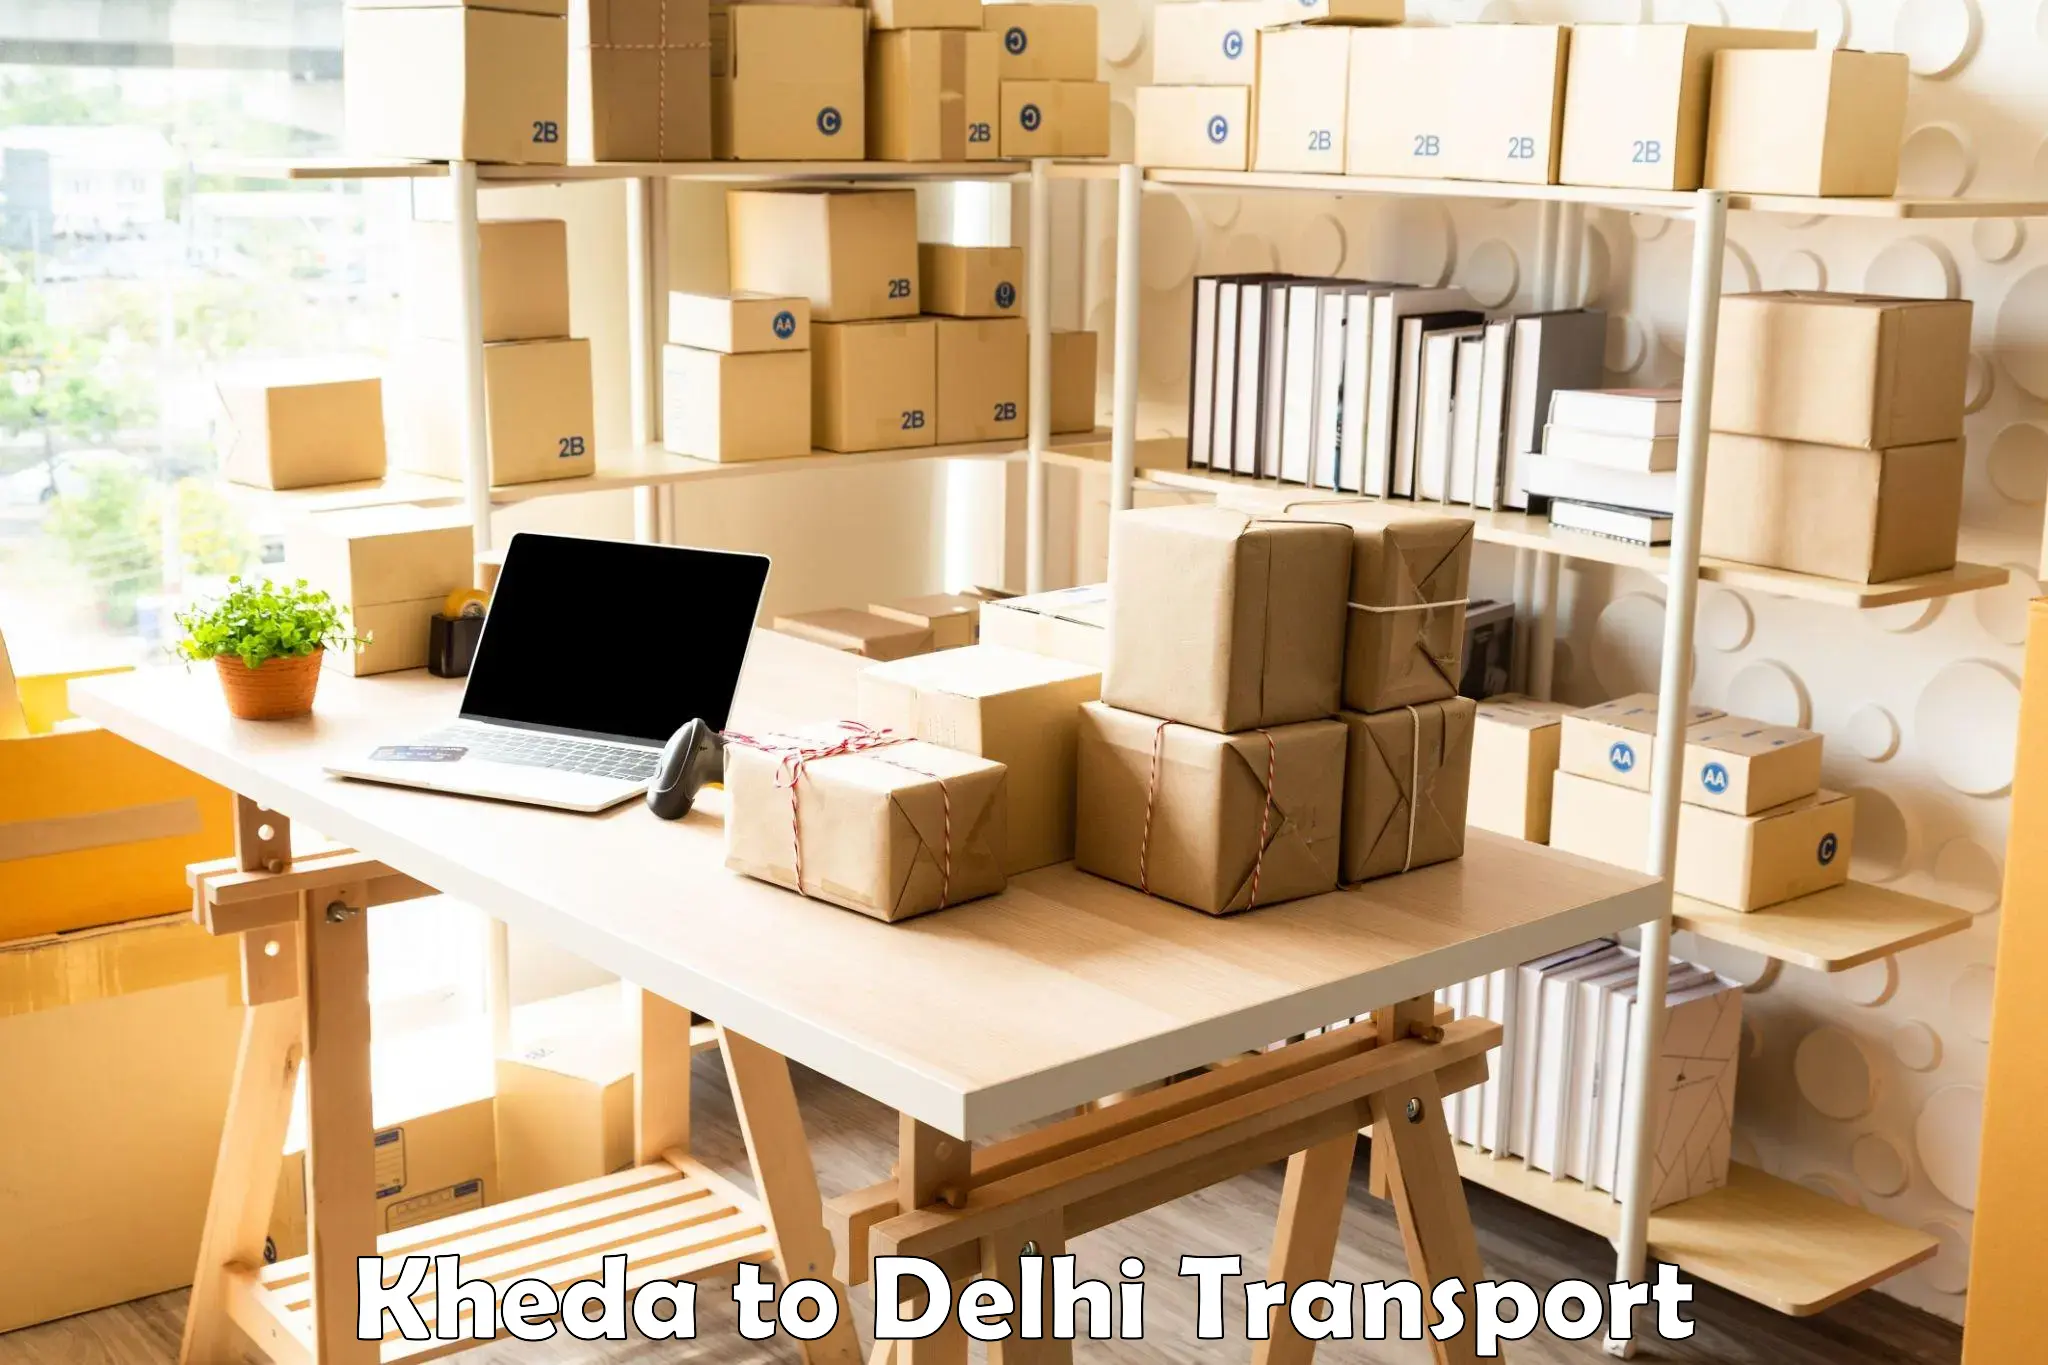 Land transport services in Kheda to Delhi